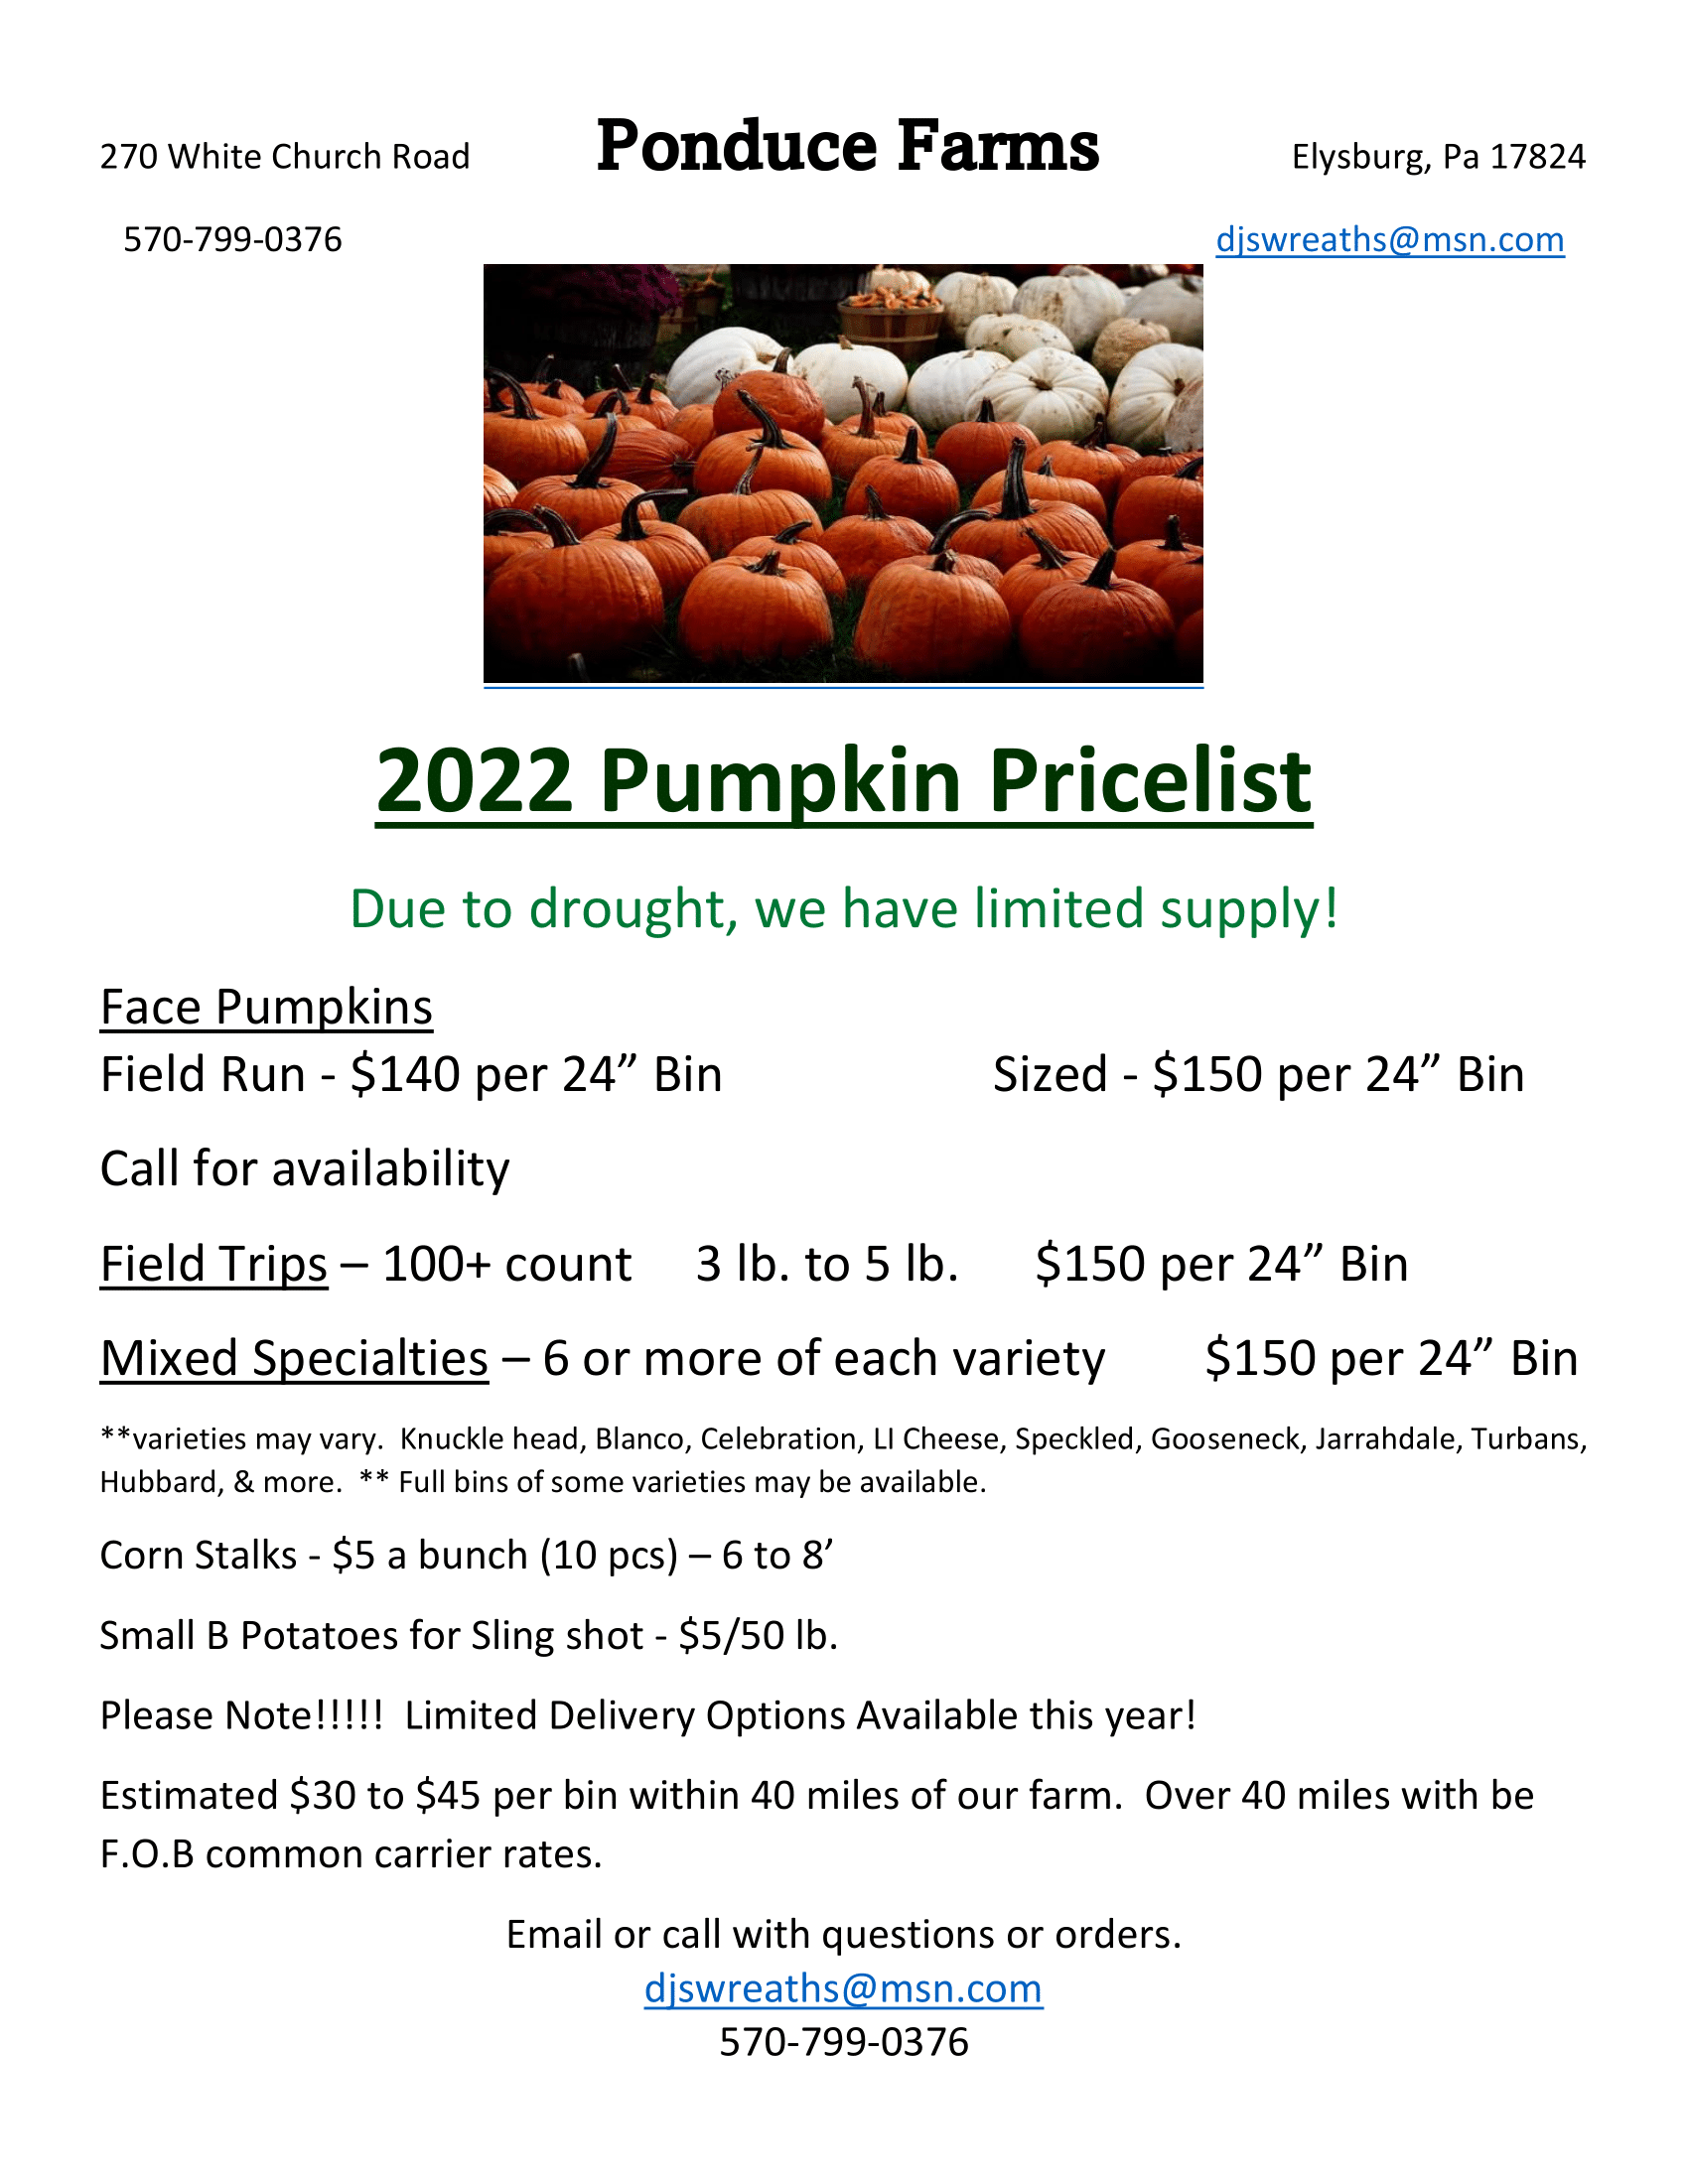 ponduce farms wholesale pumpkins